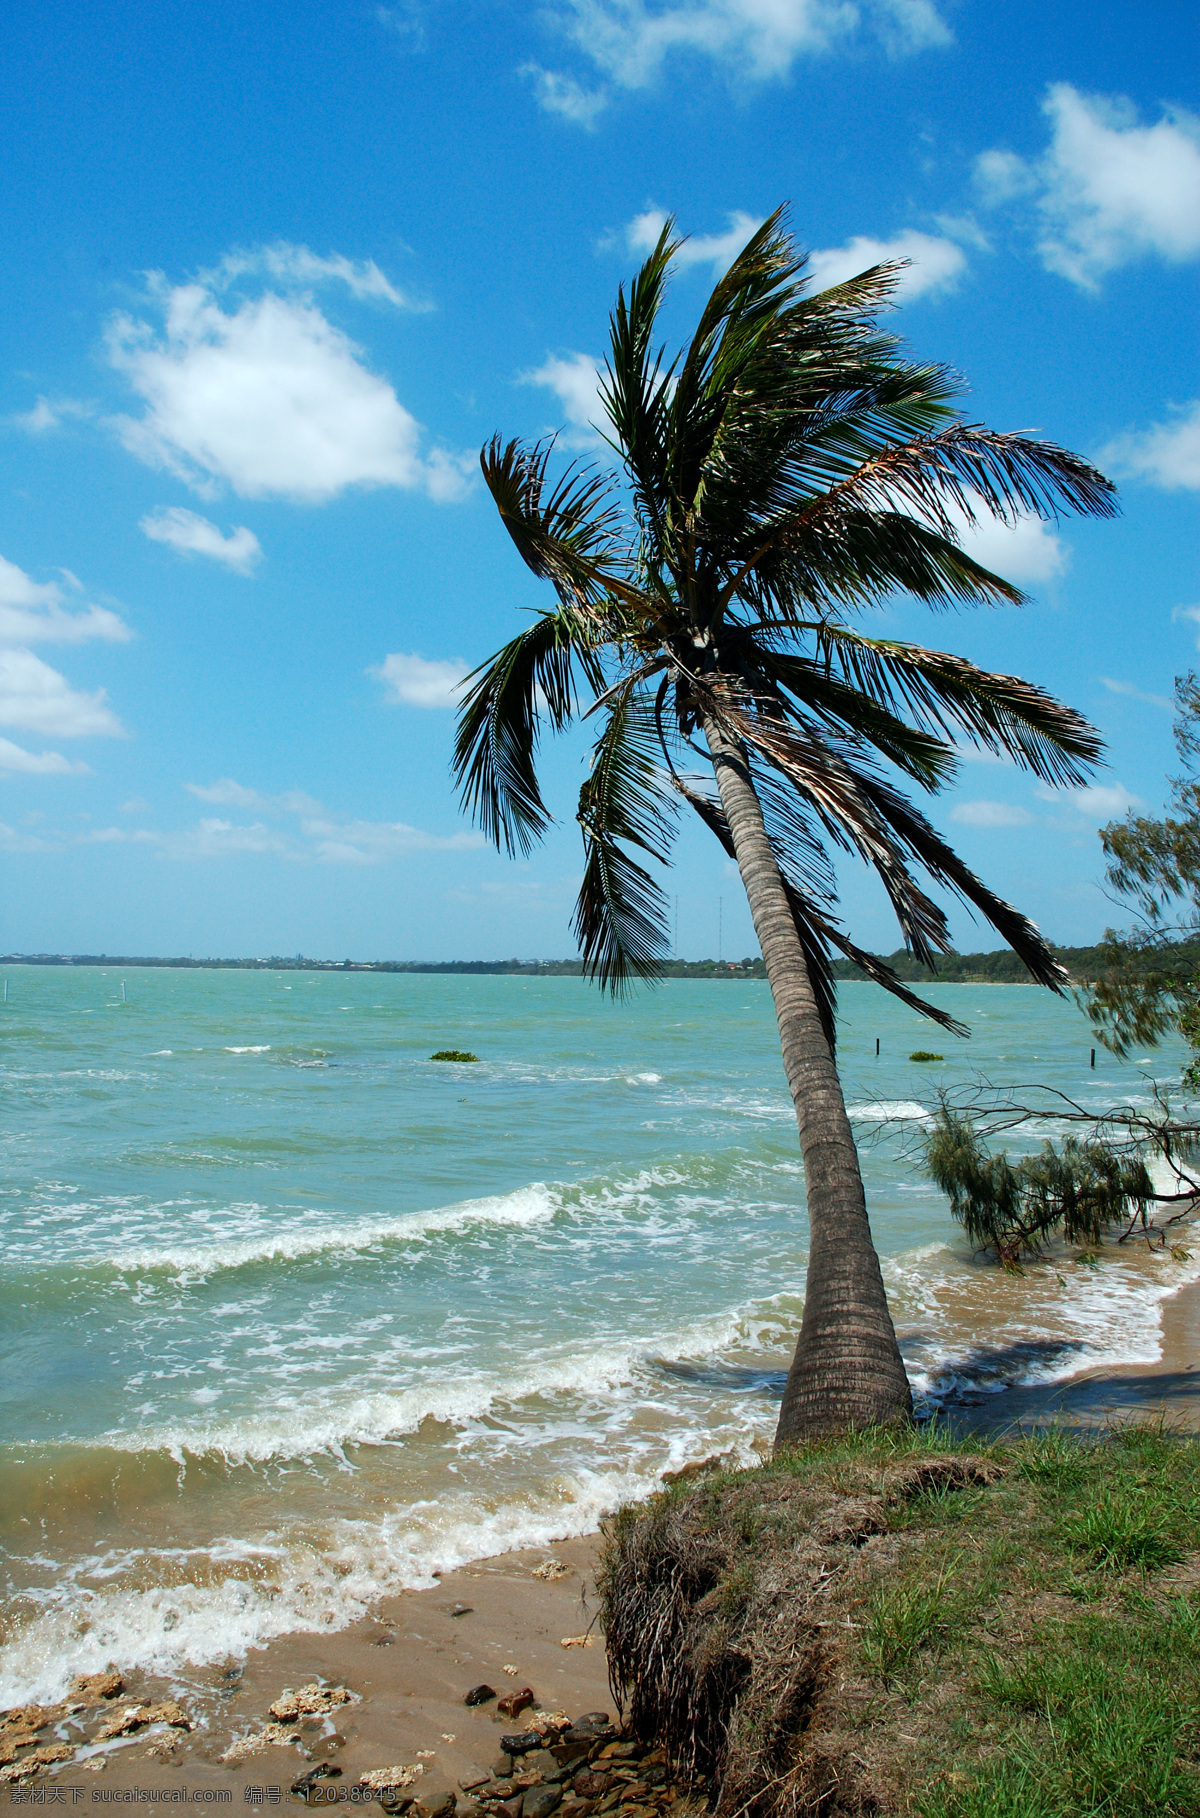 热带海边风光 热带 海边 海洋 大海 风景 风光 景色 景观 沙滩 海滩 美景 椰子树 海水 风光方面素材 自然风景 自然景观